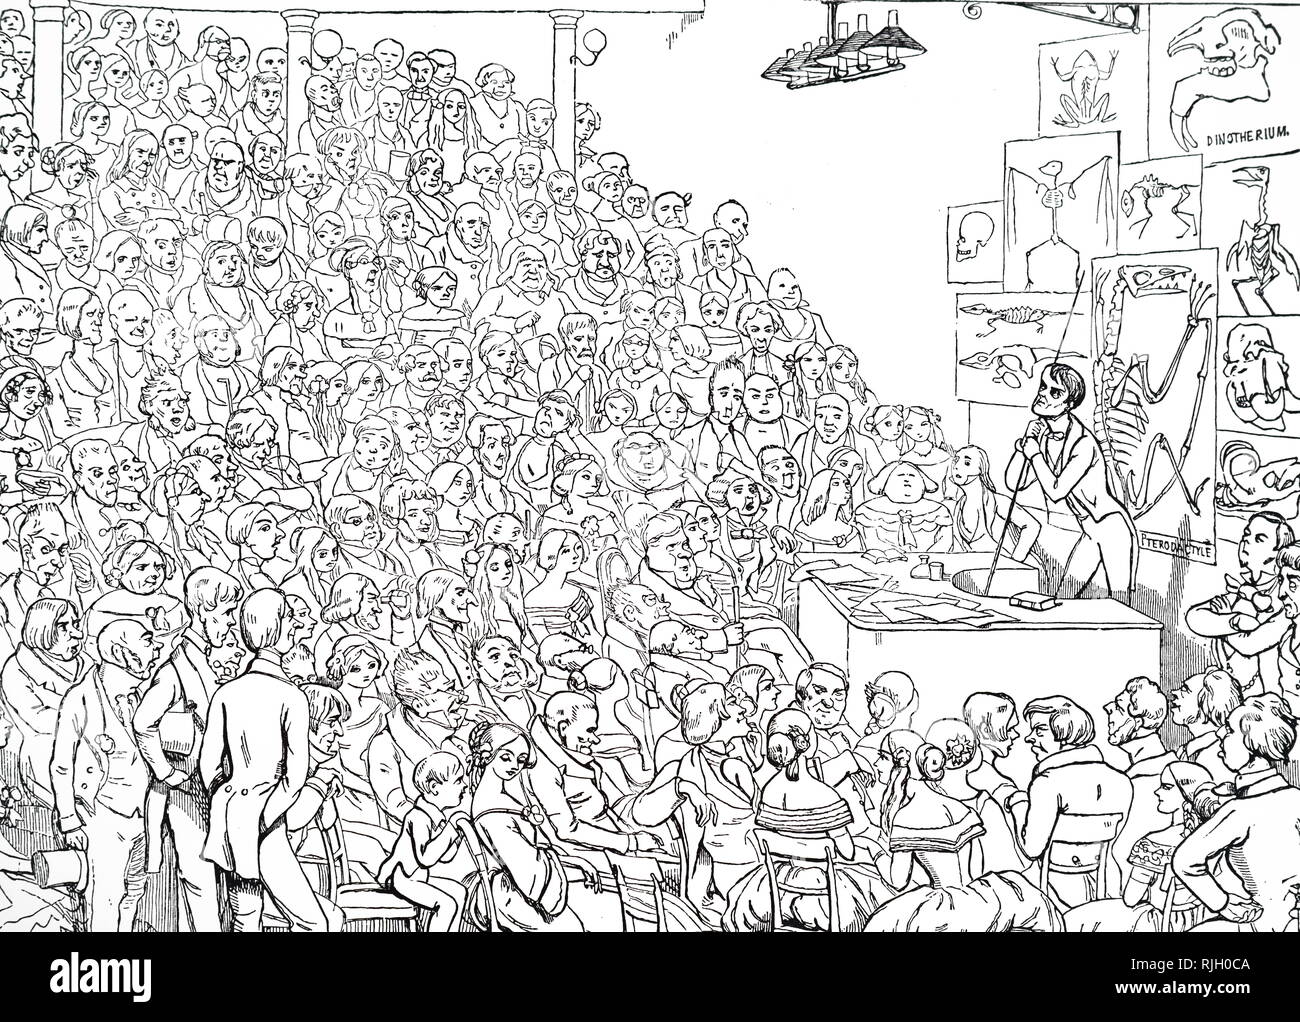 Ein Cartoon, Richard Owen, ein Freitag abend Diskurs an der Royal Institution in Großbritannien, eine Organisation, die wissenschaftliche Ausbildung und Forschung gewidmet, auf prähistorischen Tieren. Illustriert von Richard Doyle (1824-1883) eine bemerkenswerte Illustrator der viktorianischen Ära. Vom 19. Jahrhundert Stockfoto